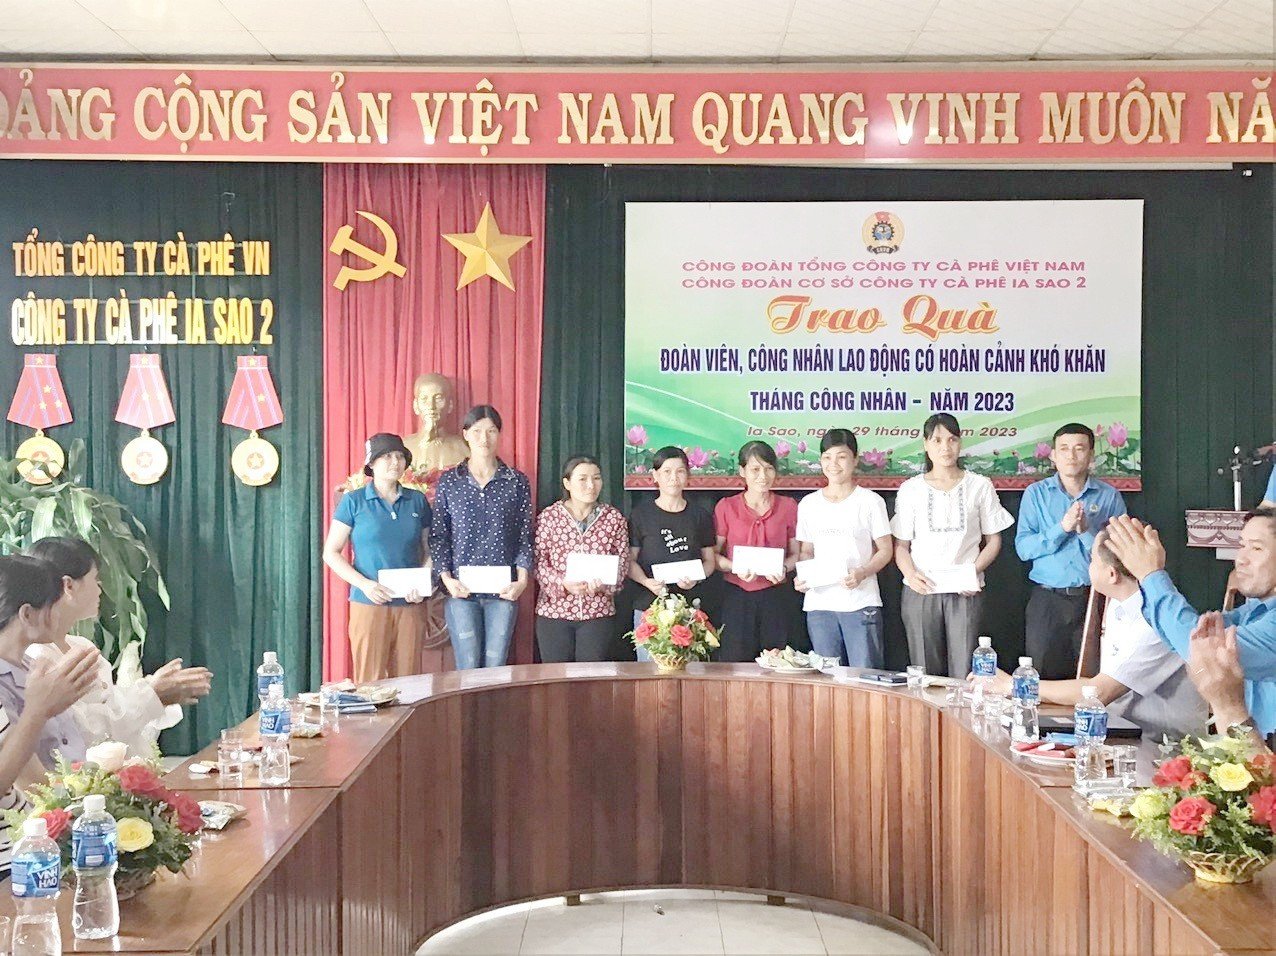 Công đoàn cơ sở Công ty cà phê Iasao 2 (Công đoàn Tổng Công ty Cà phê Việt Nam) trao quà cho đoàn viên, công nhân lao động có hoàn cảnh khó khăn nhân Tháng công nhân năm 2023. Ảnh: CĐN 